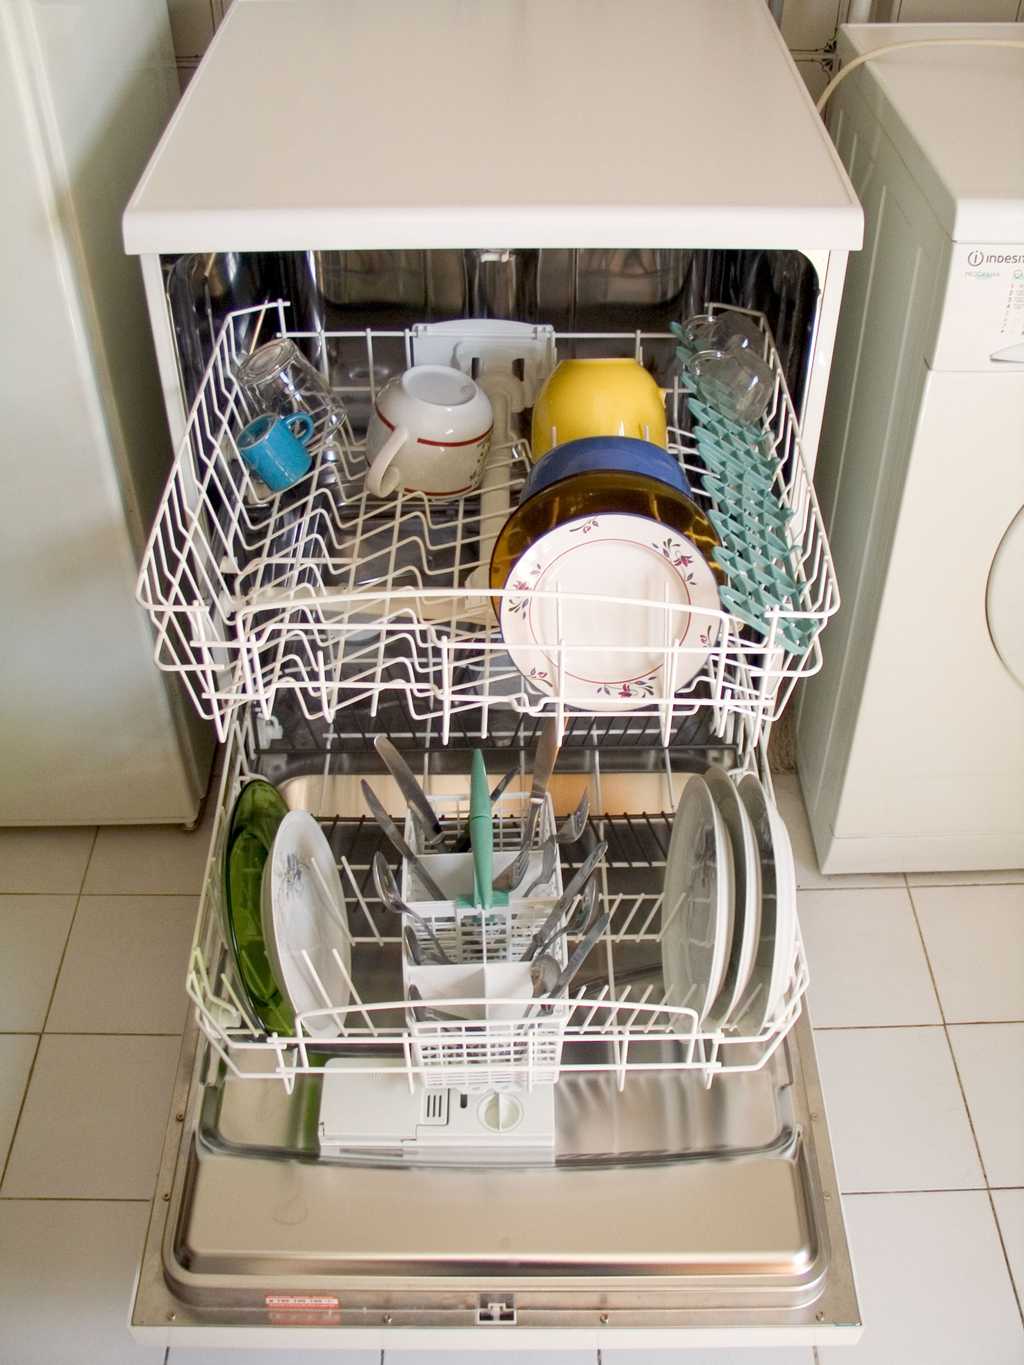 Le lave-vaisselle consomme seulement 13 litres d'eau contre 18 litres si l'on désire laver la même quantité de vaisselle à la main. © Carlos Paes, CC BY-SA 3.0, Wikimédia Commons